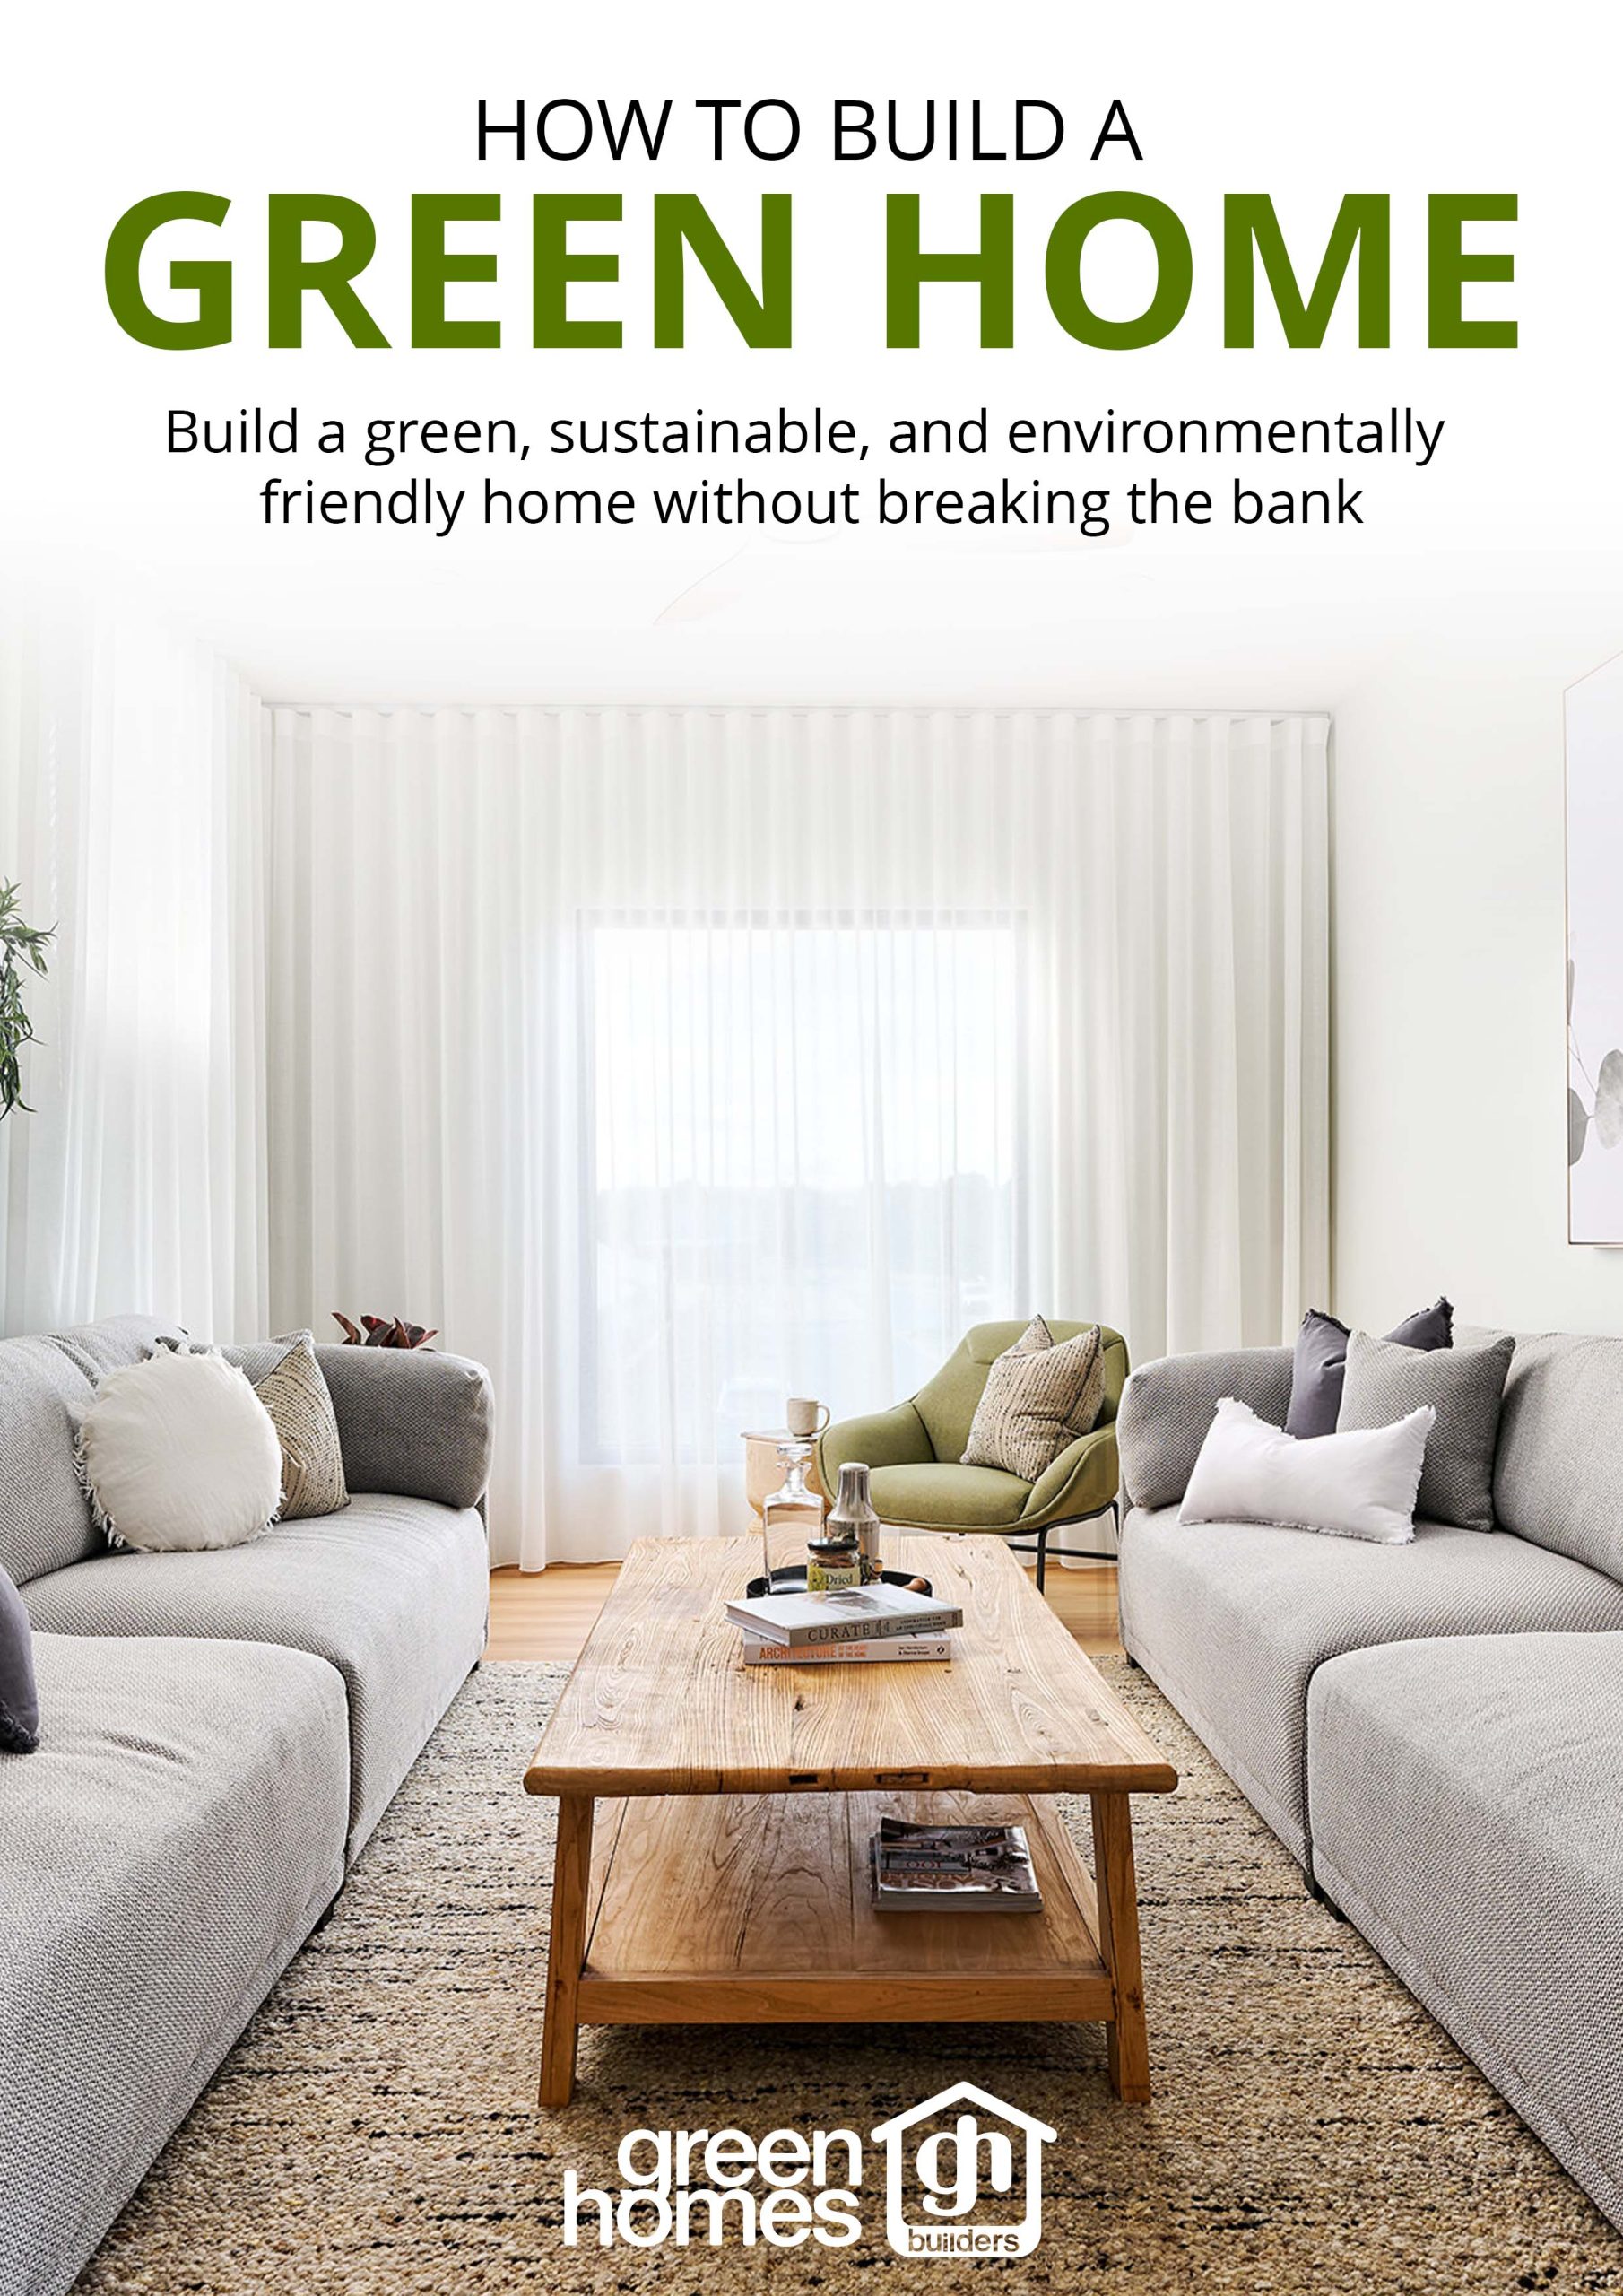 Ebook by Green Homes Builders Australia